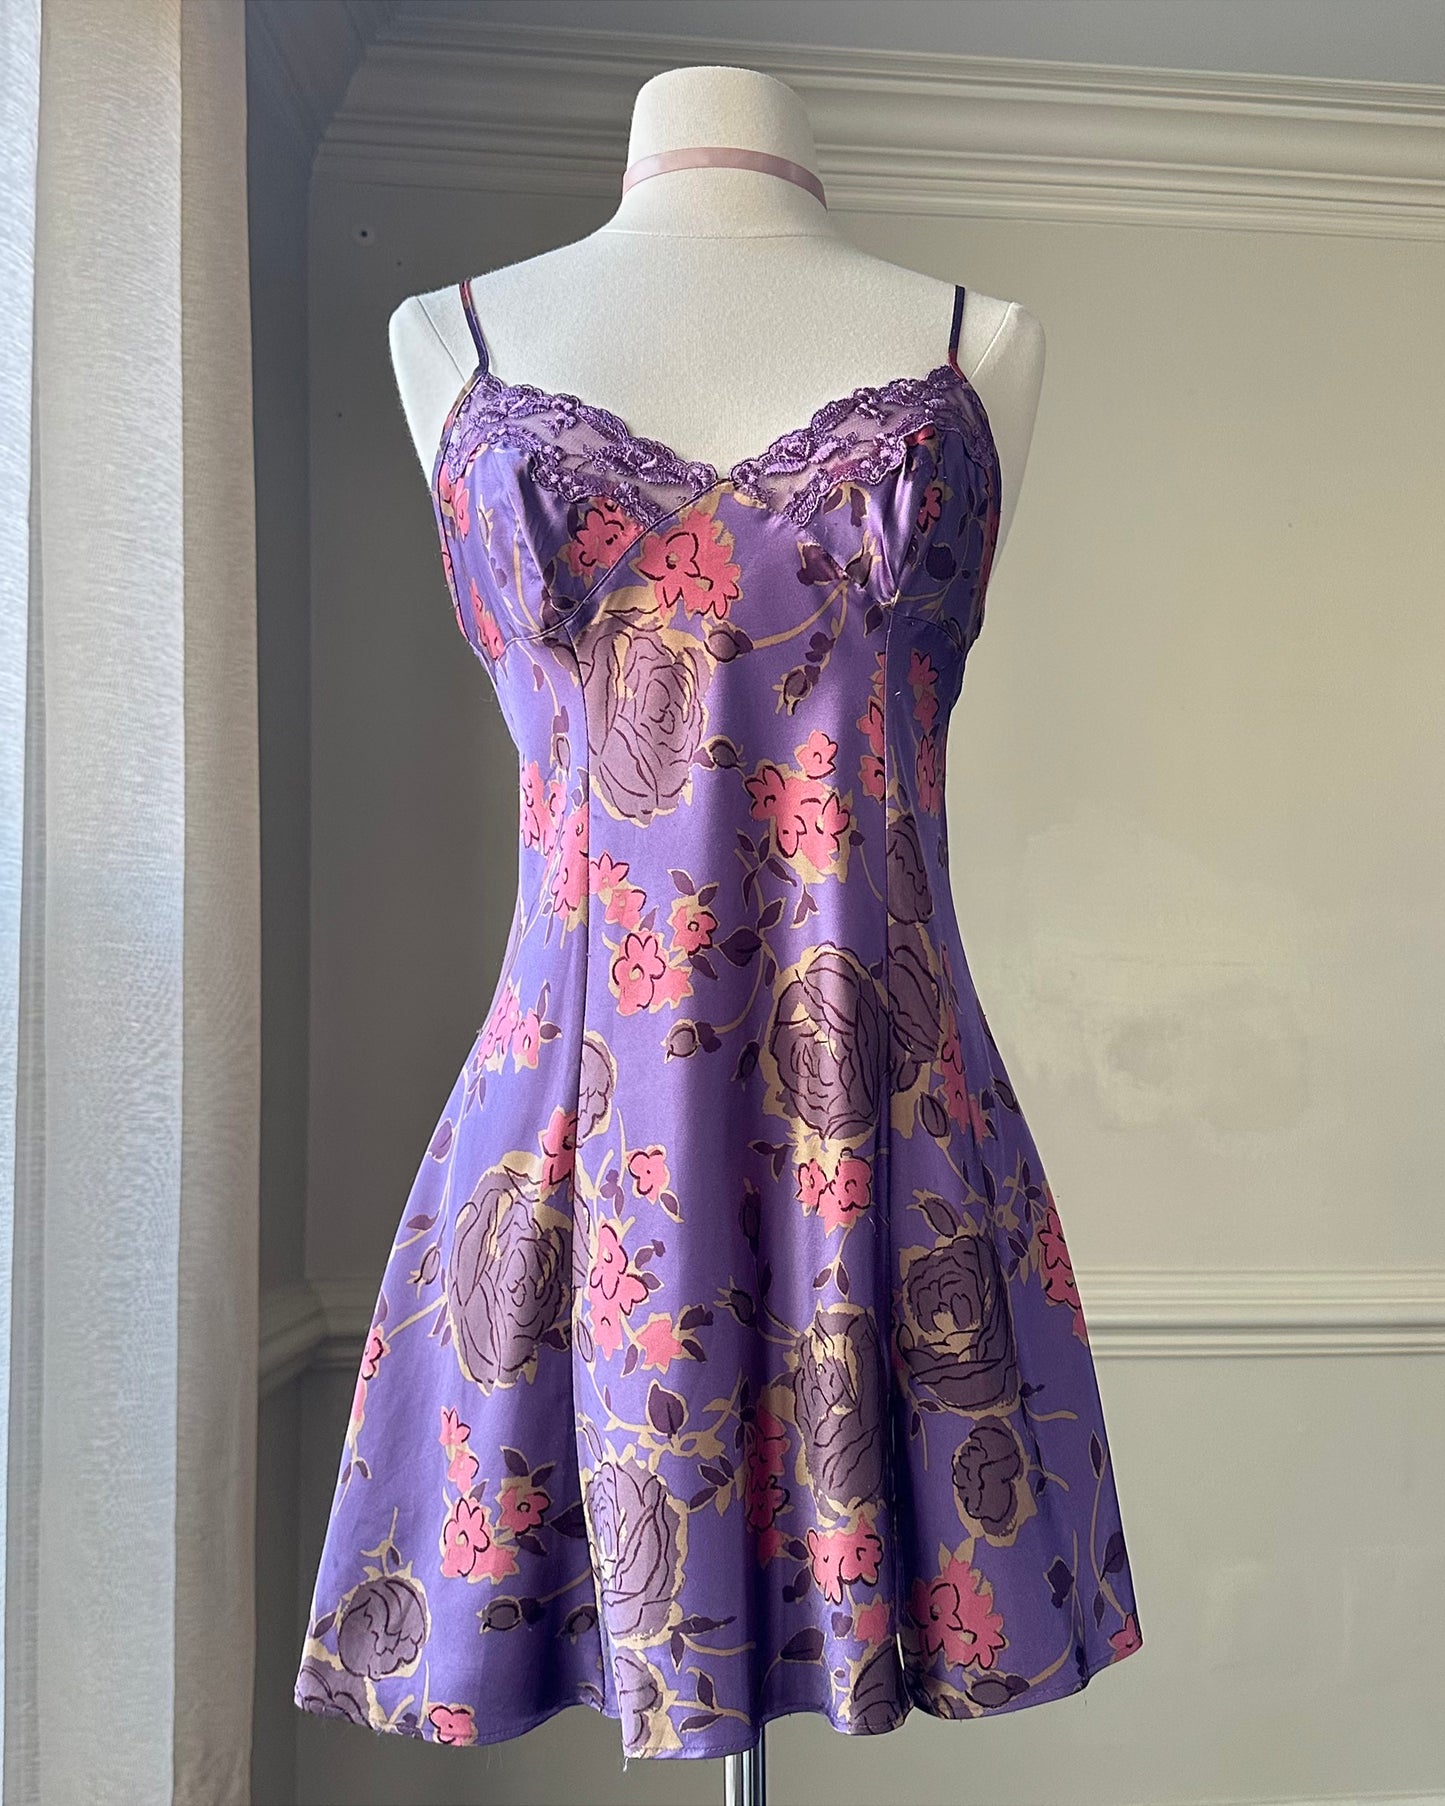 Victoria’s Secret Vibrant Purple Dress featuring Floral Pattern